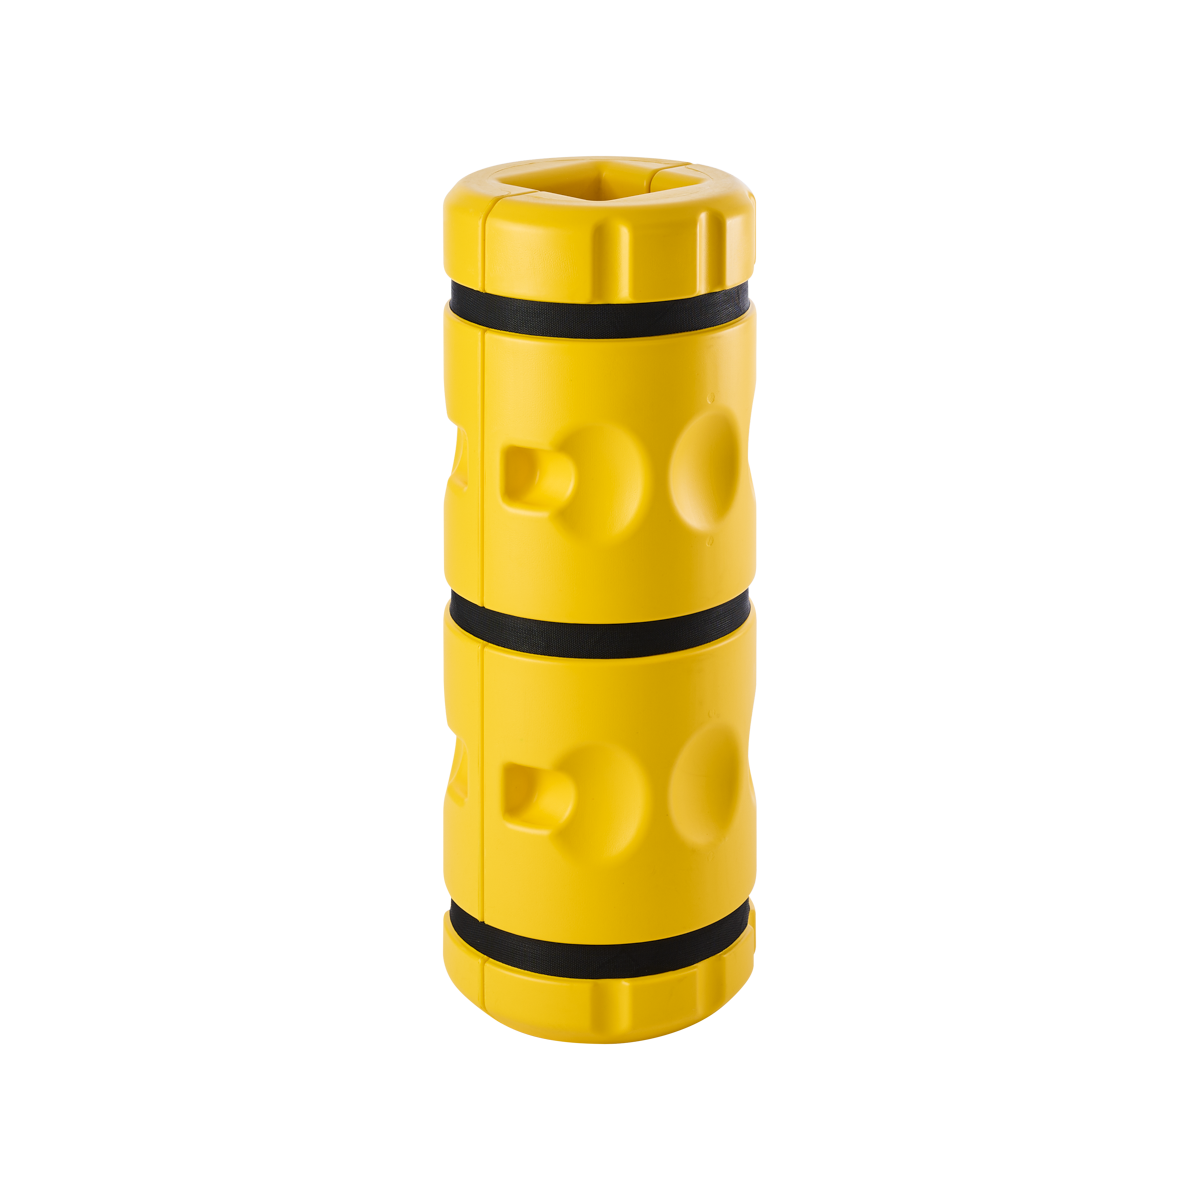 Modellbeispiel: Säulenanfahrschutz aus Kunststoff, für eckige Säulen mit einem Säulenmaß von 150 x 150 mm (Art. 41536.0001)